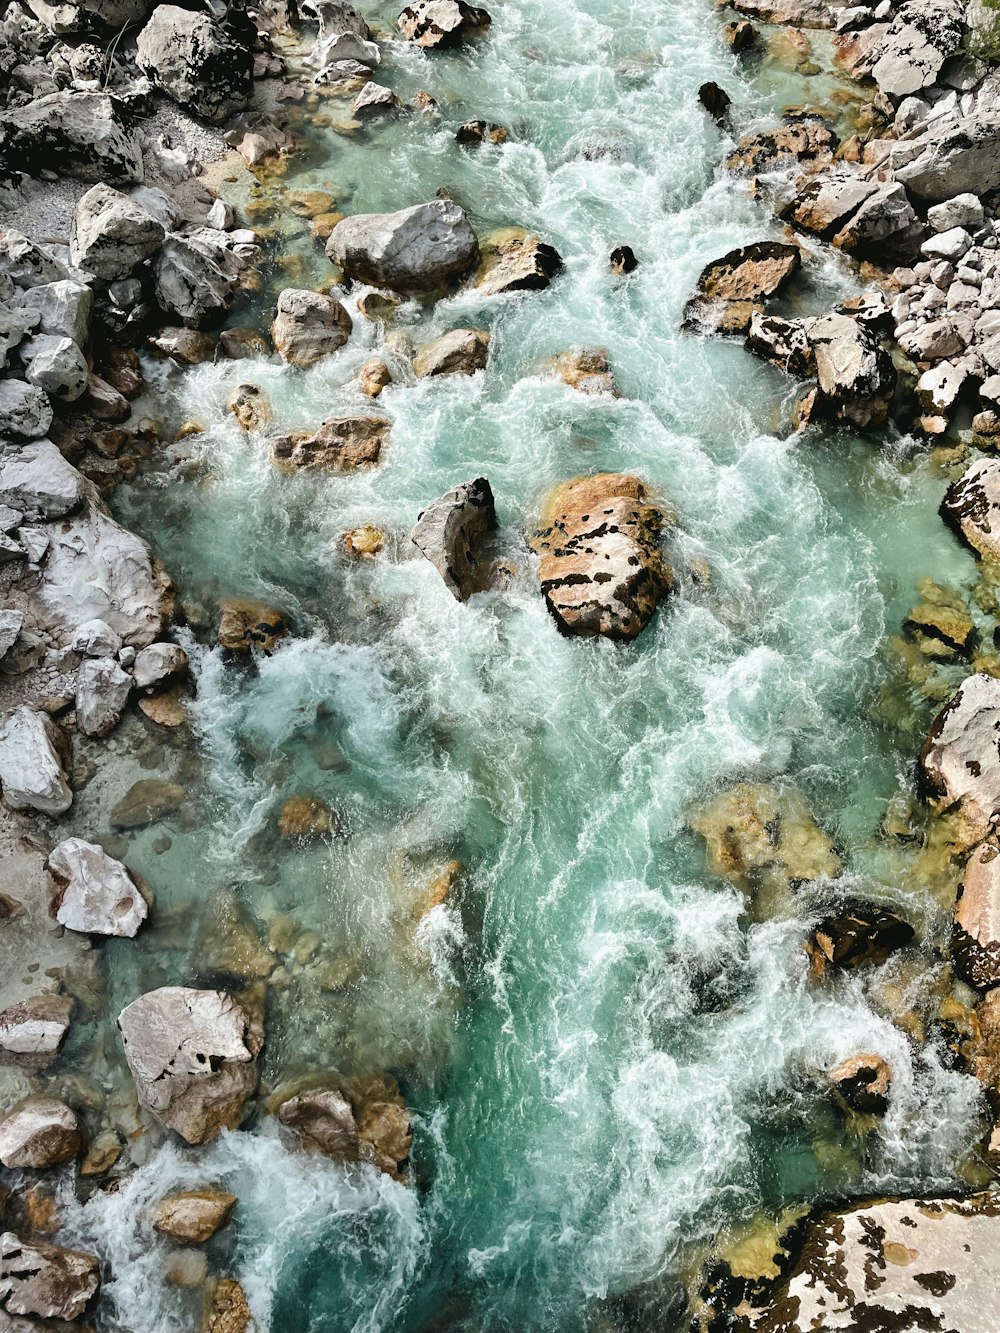 River Rocks Pictures  Download Free Images on Unsplash